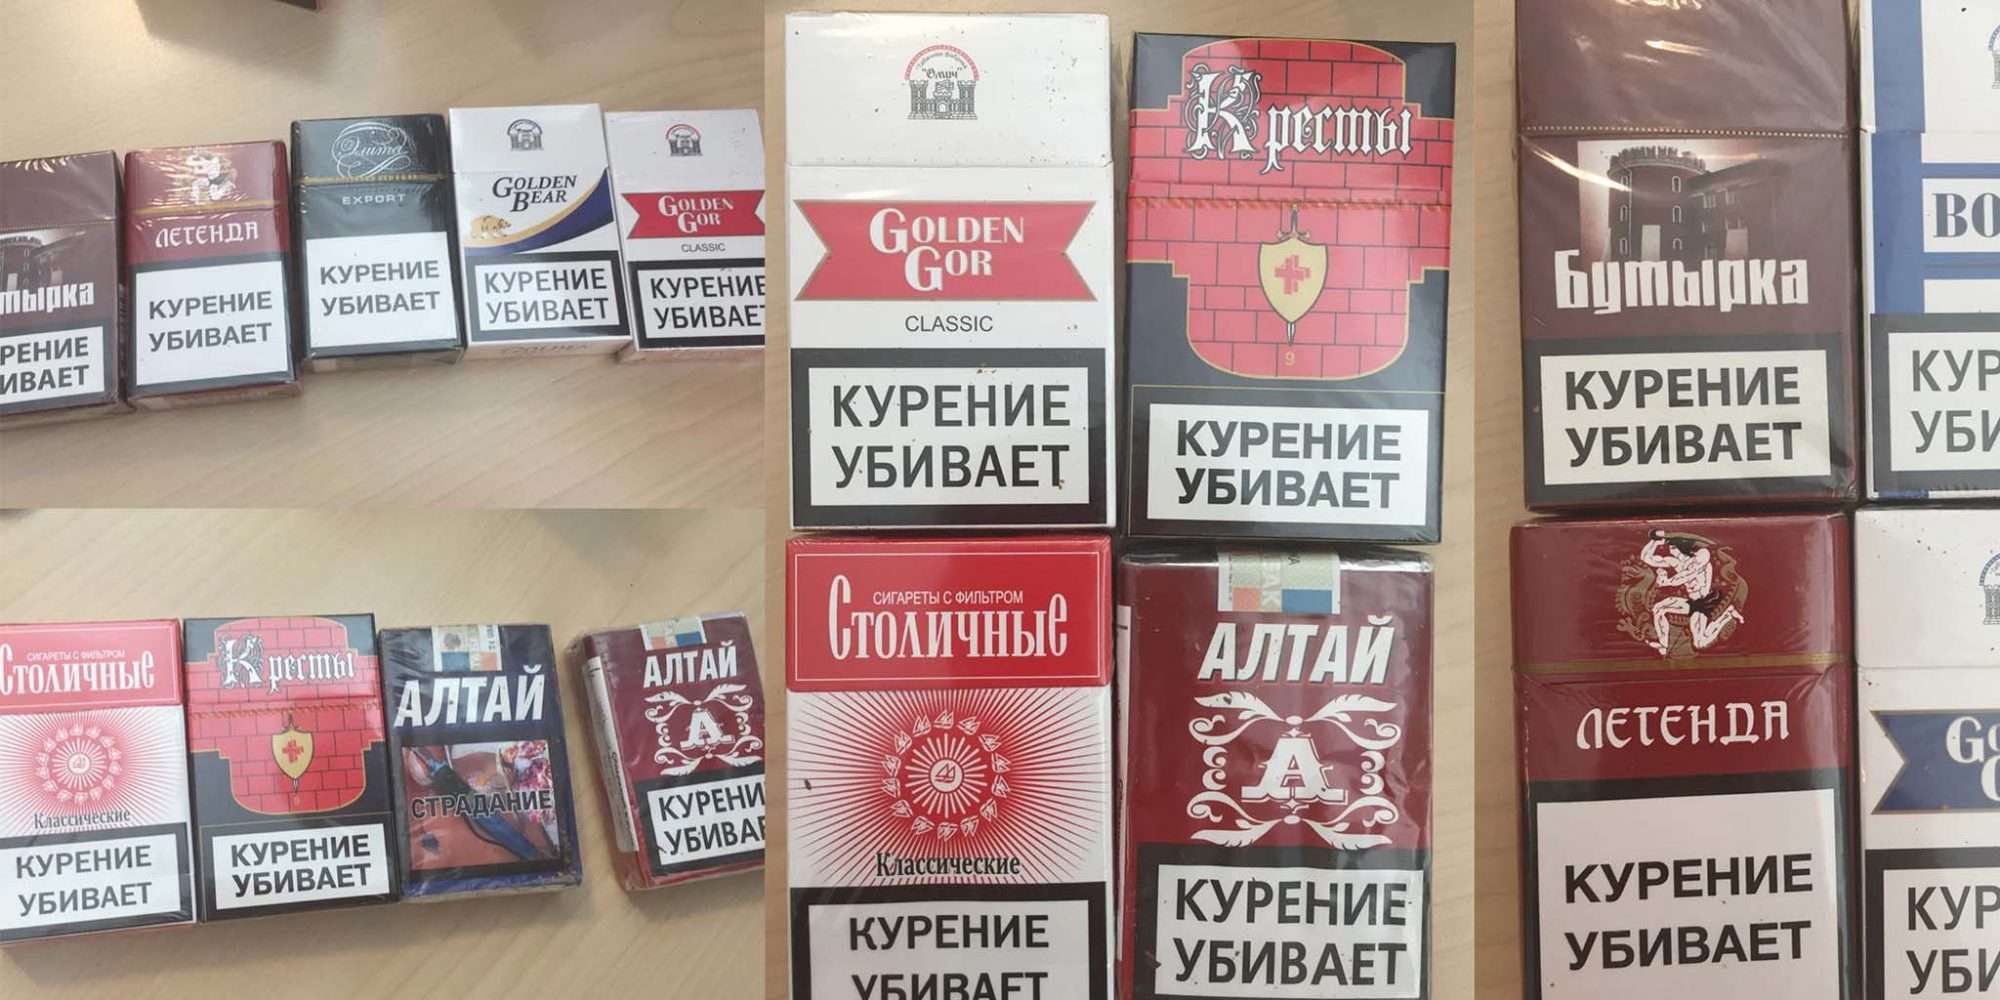 марки сигарет в россии фото